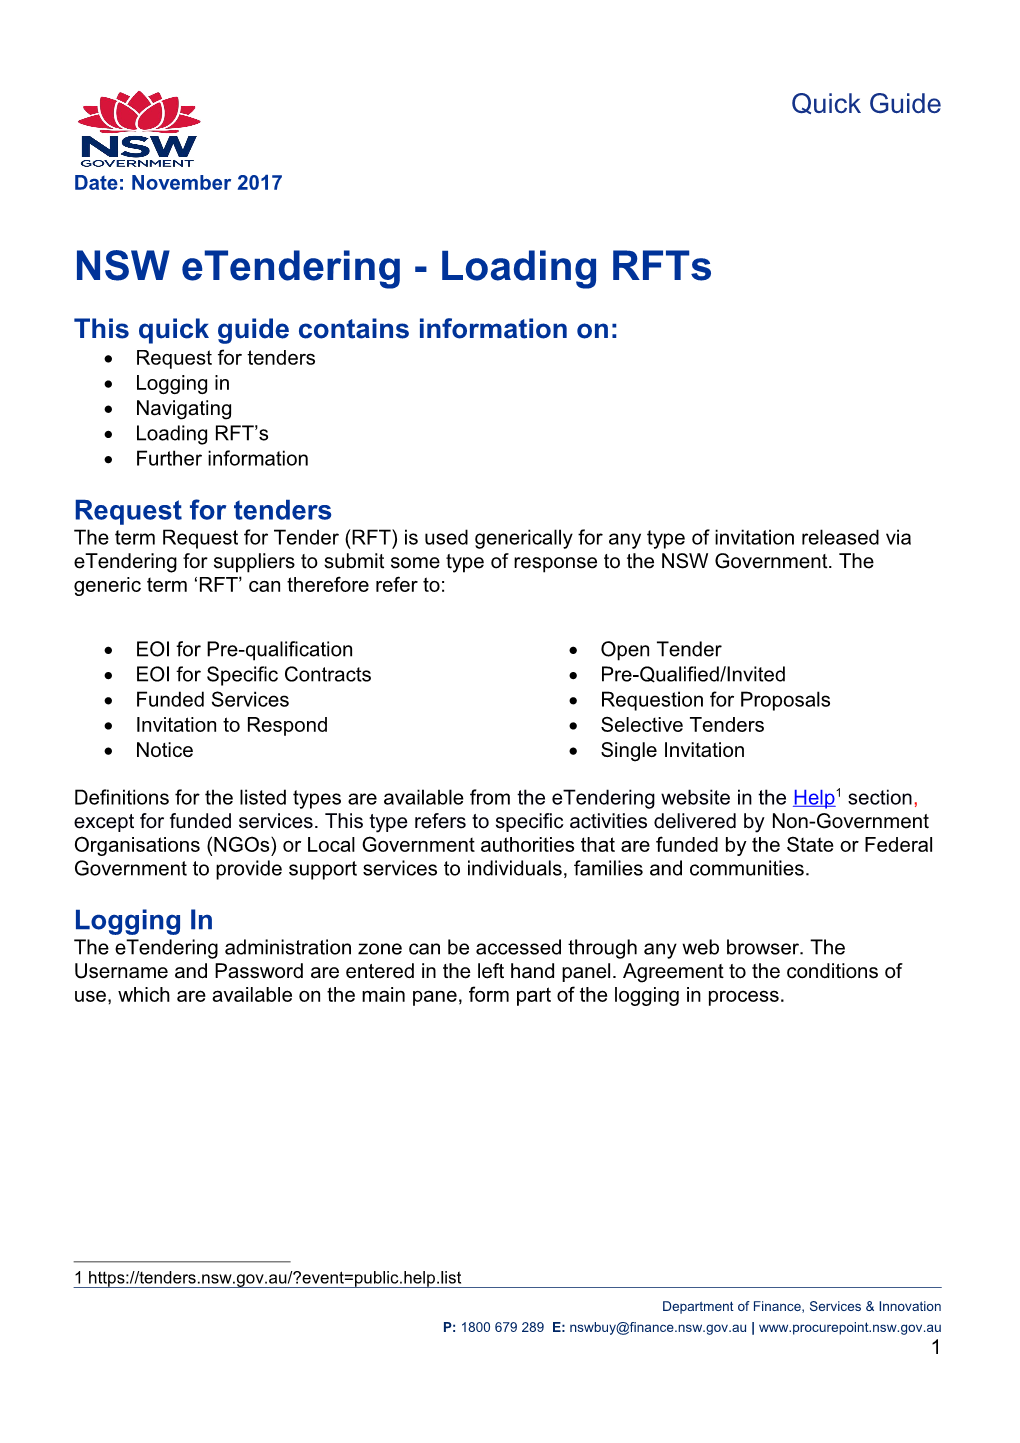 NSW Etendering - Loading RFT's